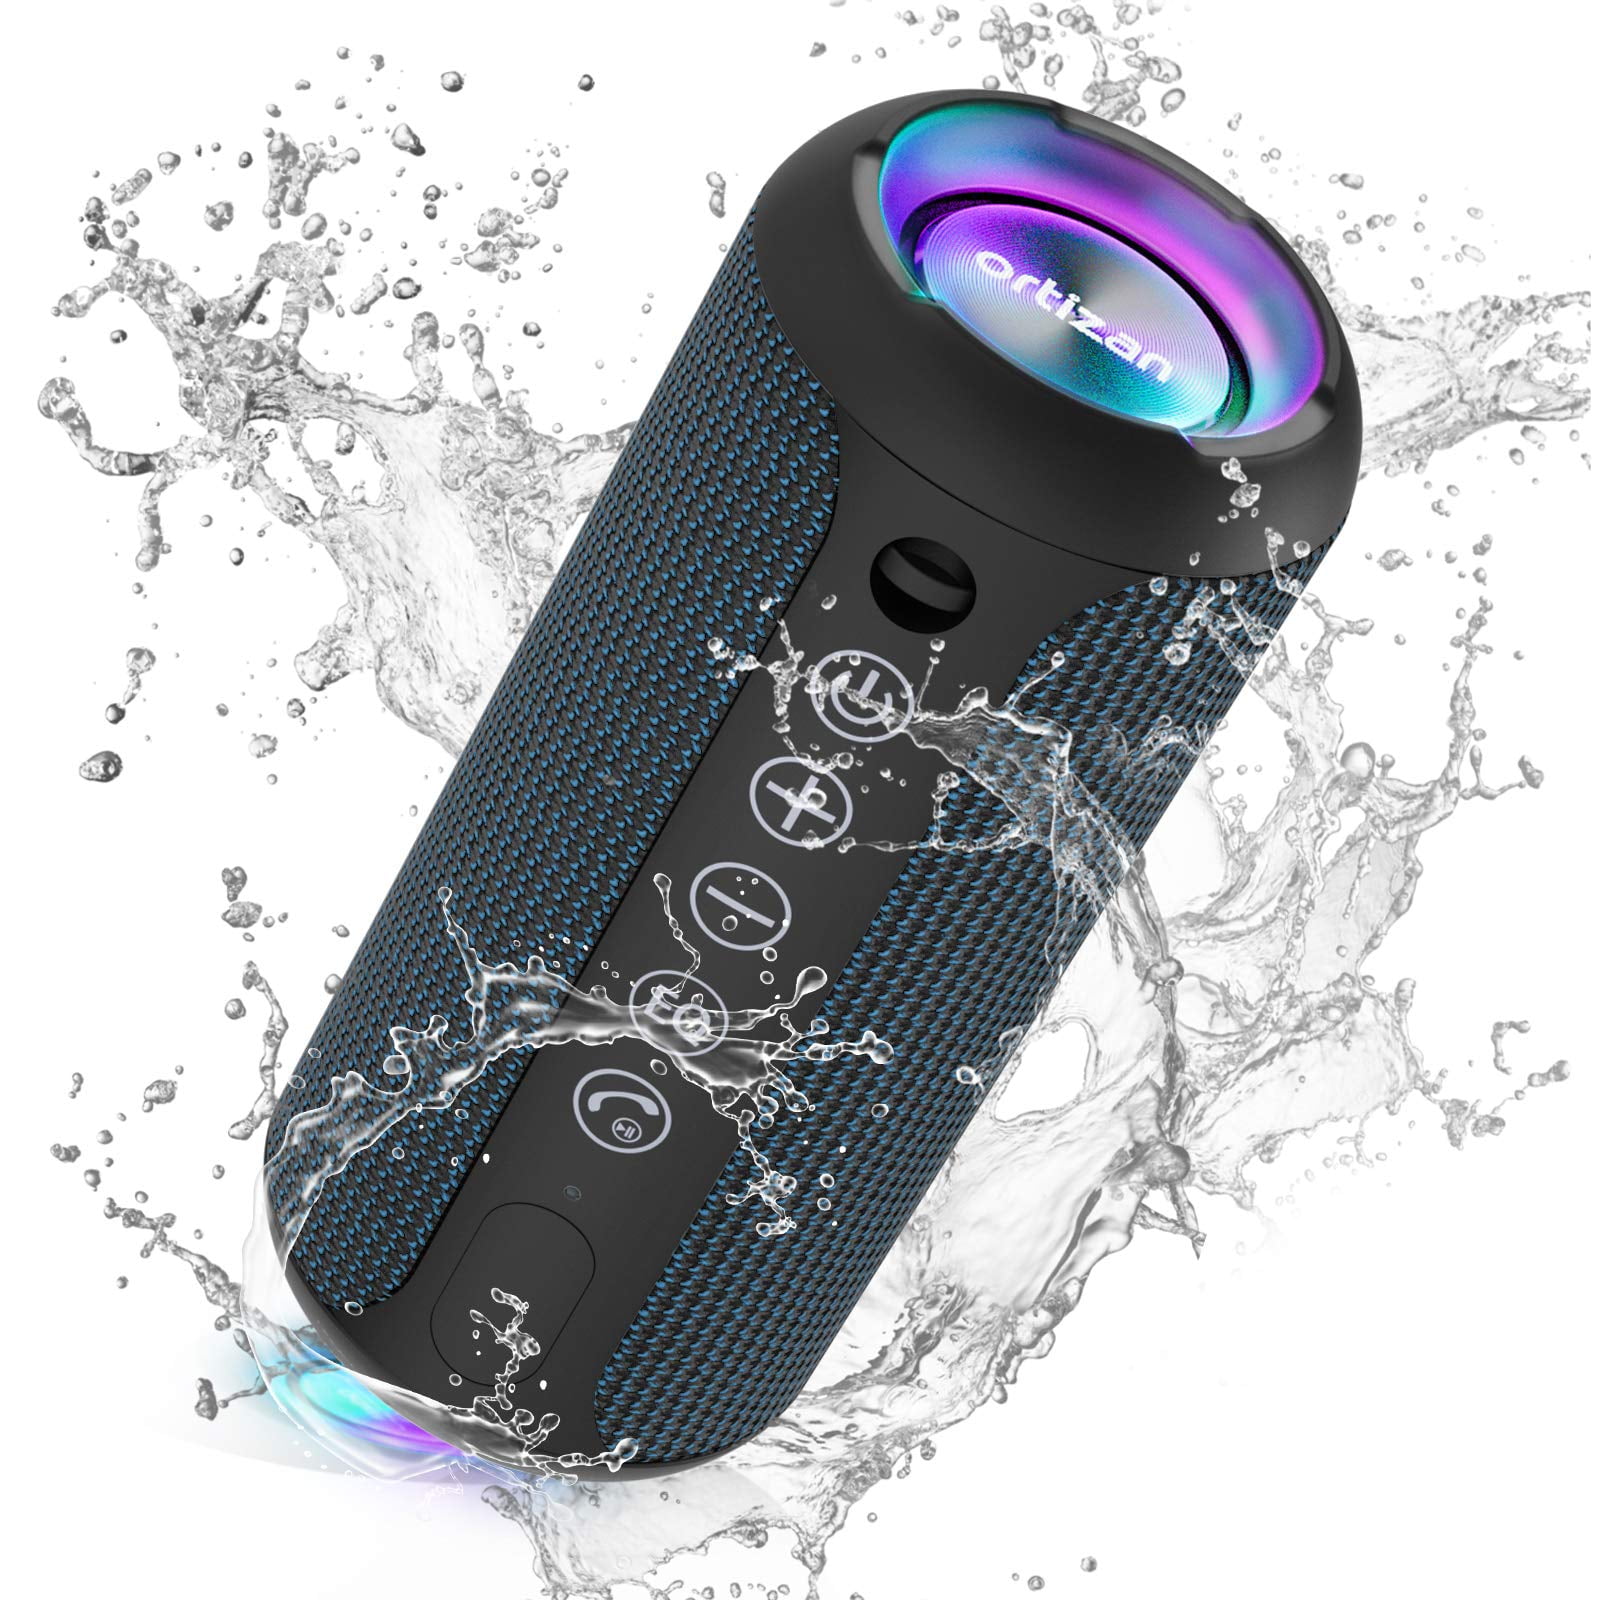 Ortizan Altavoz de ducha Bluetooth, IPX7 impermeable altavoz inalámbrico  con luz LED, sonido fuerte de 8 W, tiempo de reproducción 24 horas,  flotante